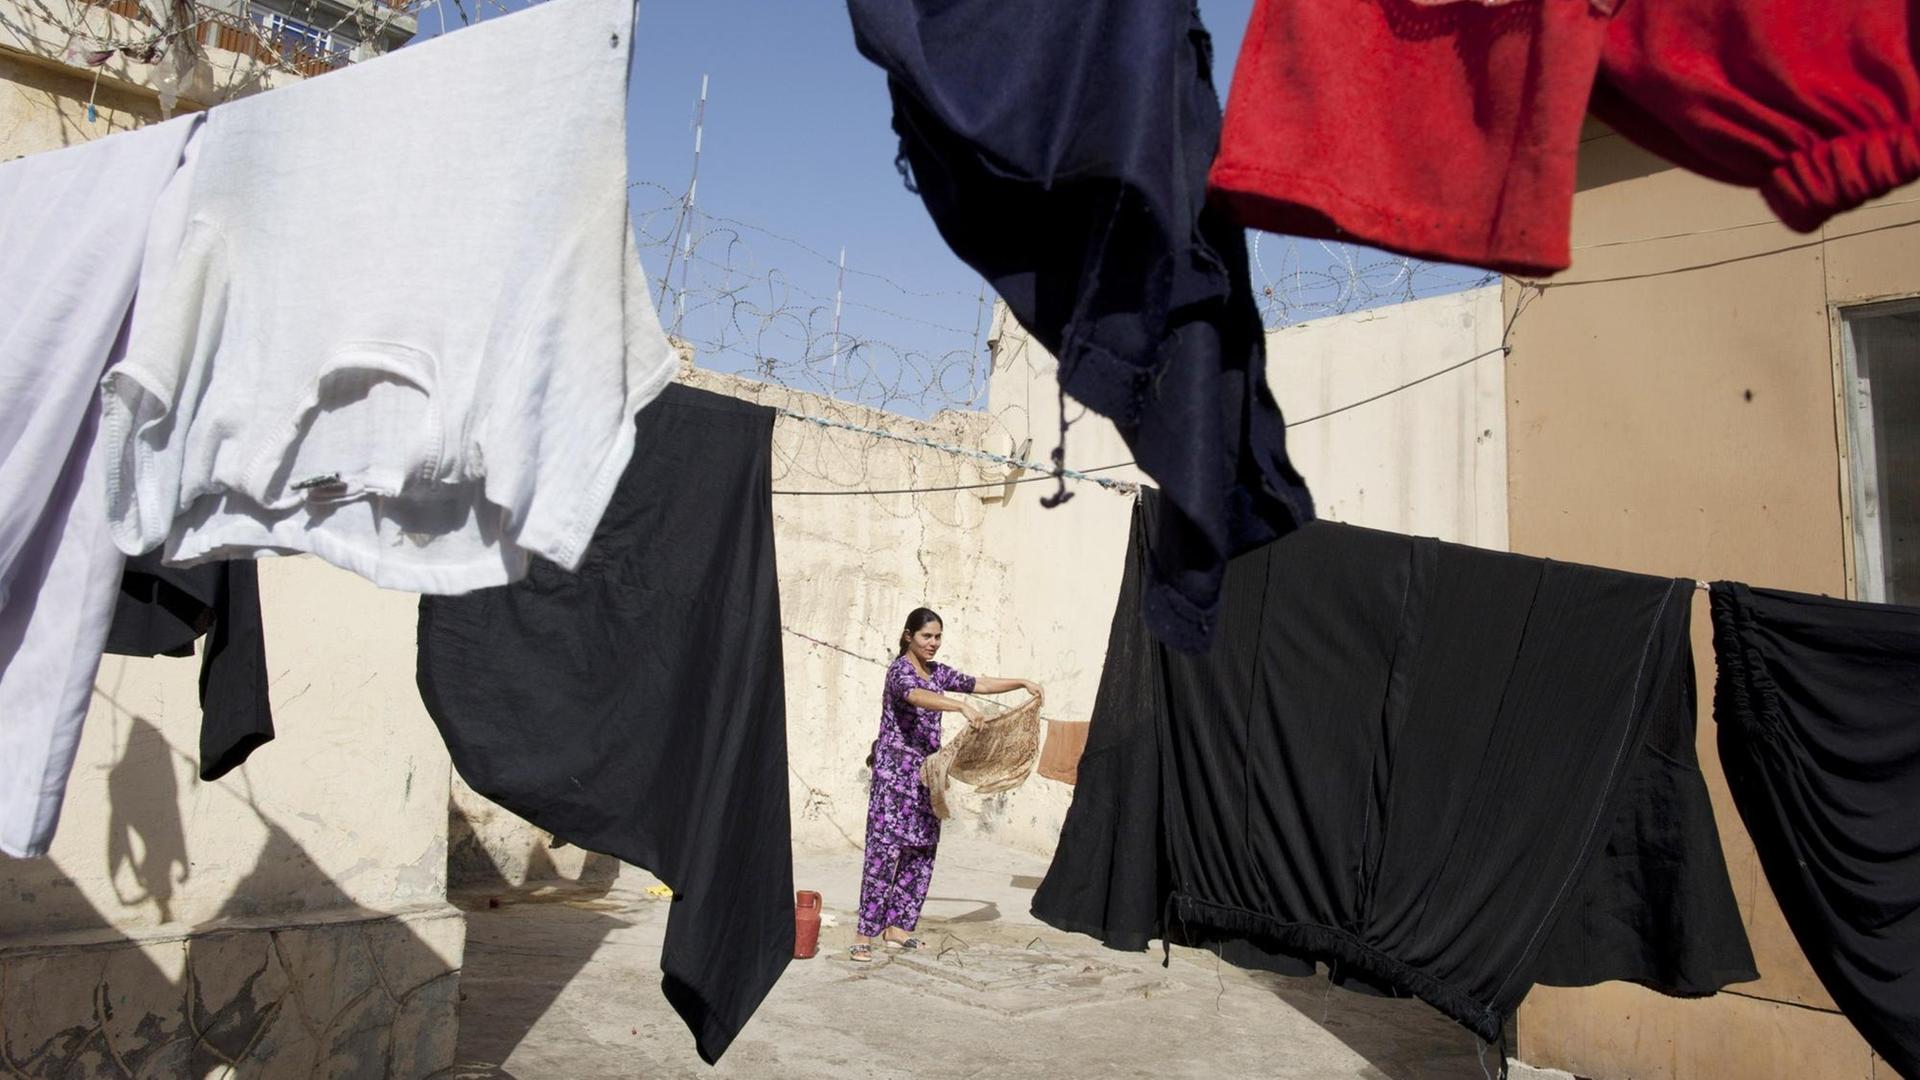 Blick in den Innenhof der Haftanstalt für Frauen in Mazar-E-Sharif in Afghanistan, in dem eine Wäscheleine hängt, im Hintergrund ist eine Frau zu sehen, aufgenommen im Oktober 2010